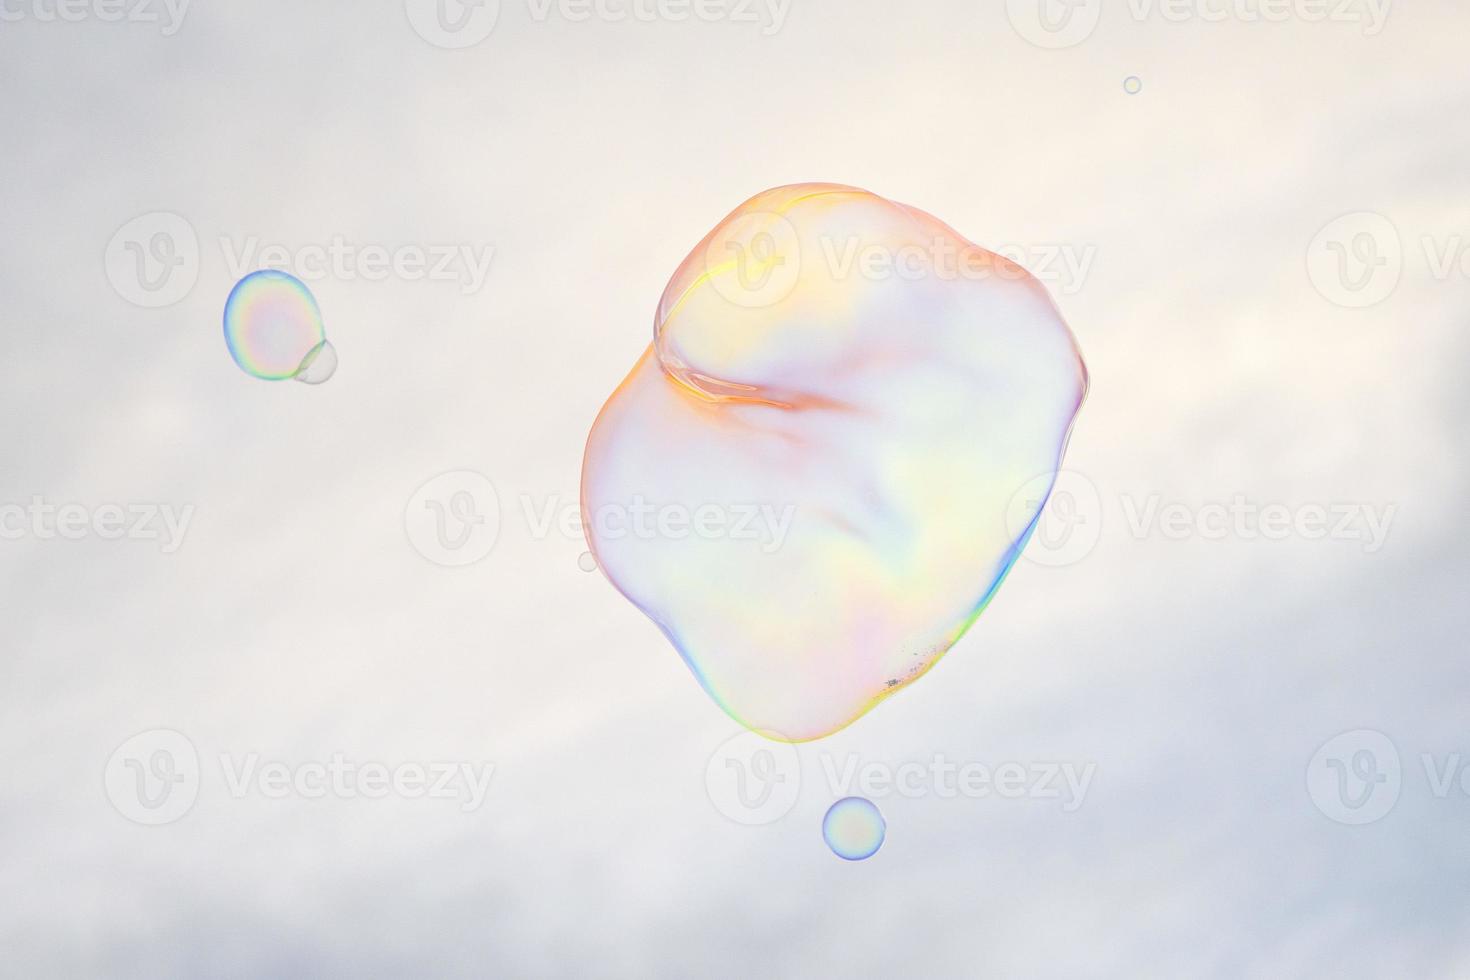 bolha de sabão gigante no fundo do céu foto